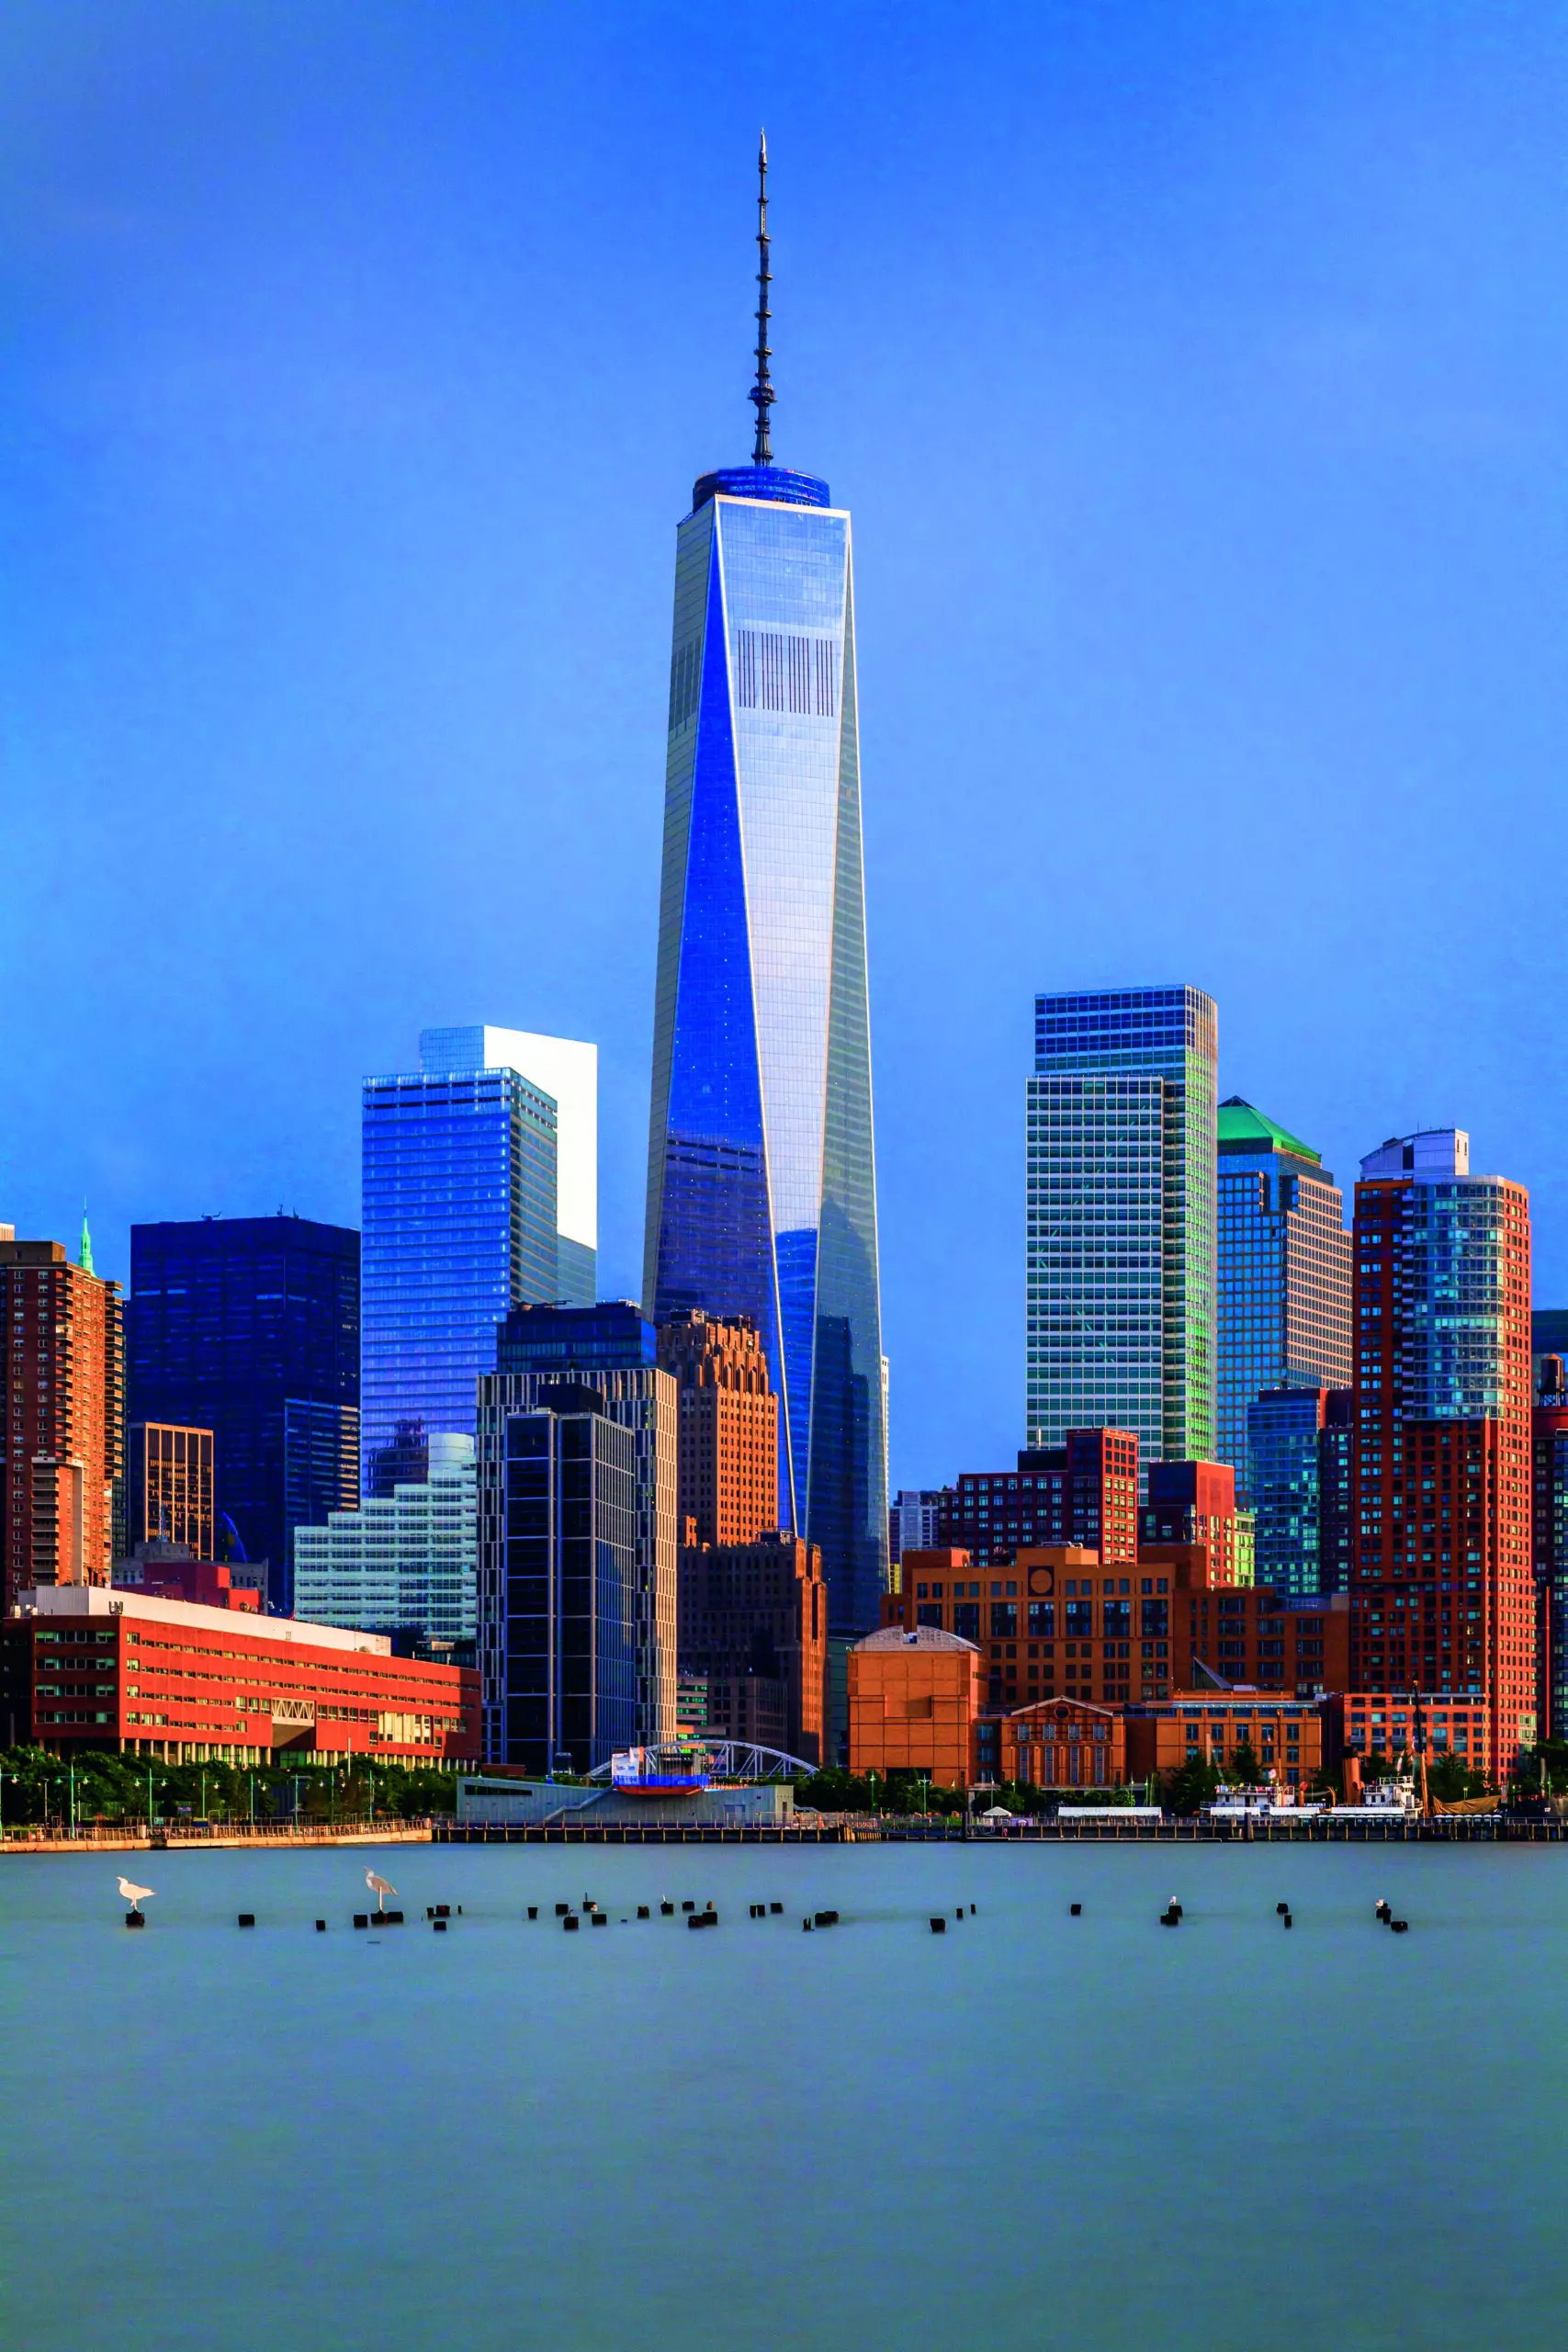 Wandbild (6011) One World Trade Center by Olimpio Fantuz/HUBER IMAGES präsentiert: Architektur,Häuser,Skylines